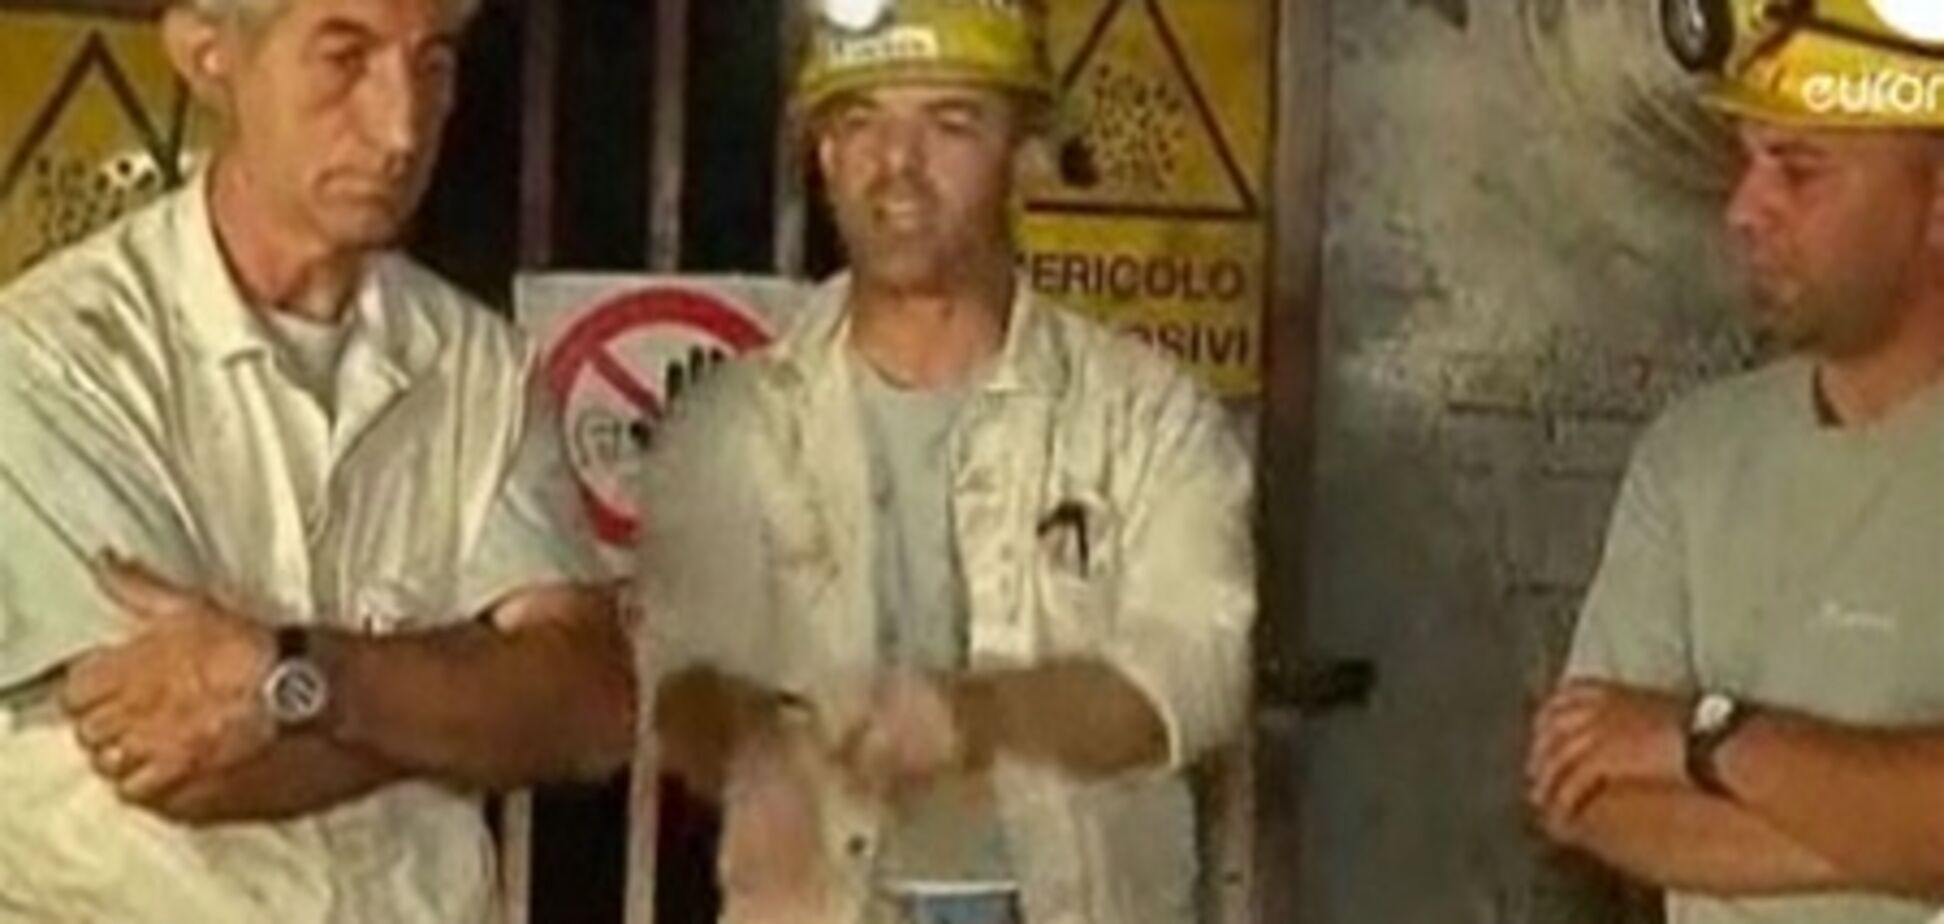 Італійський шахтар порізав собі вени перед телекамерами